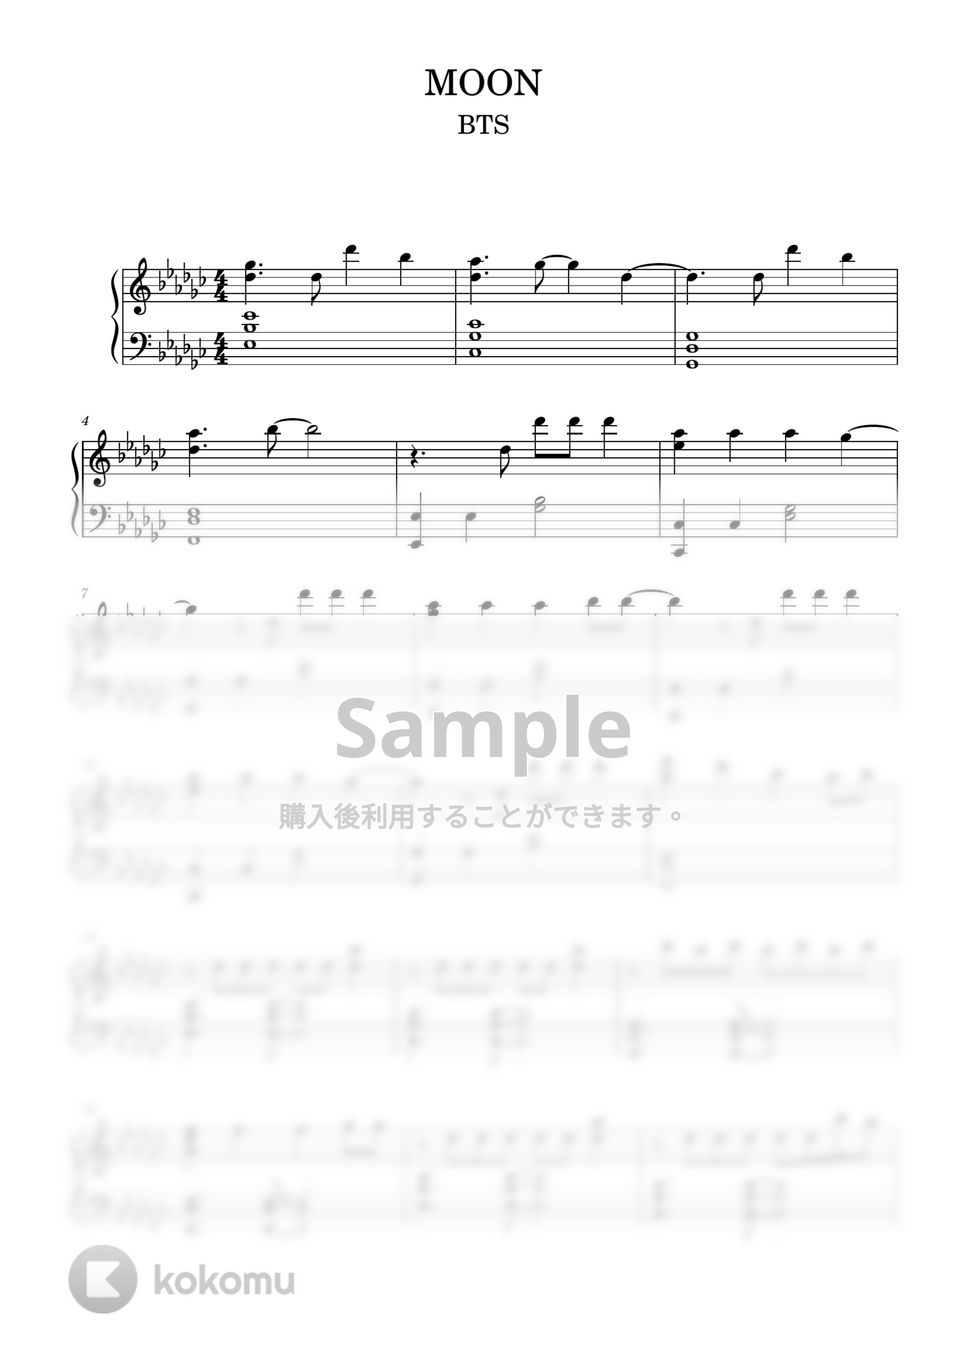 防弾少年団(BTS) - Moon (ピアノ上級ソロ) by pianon